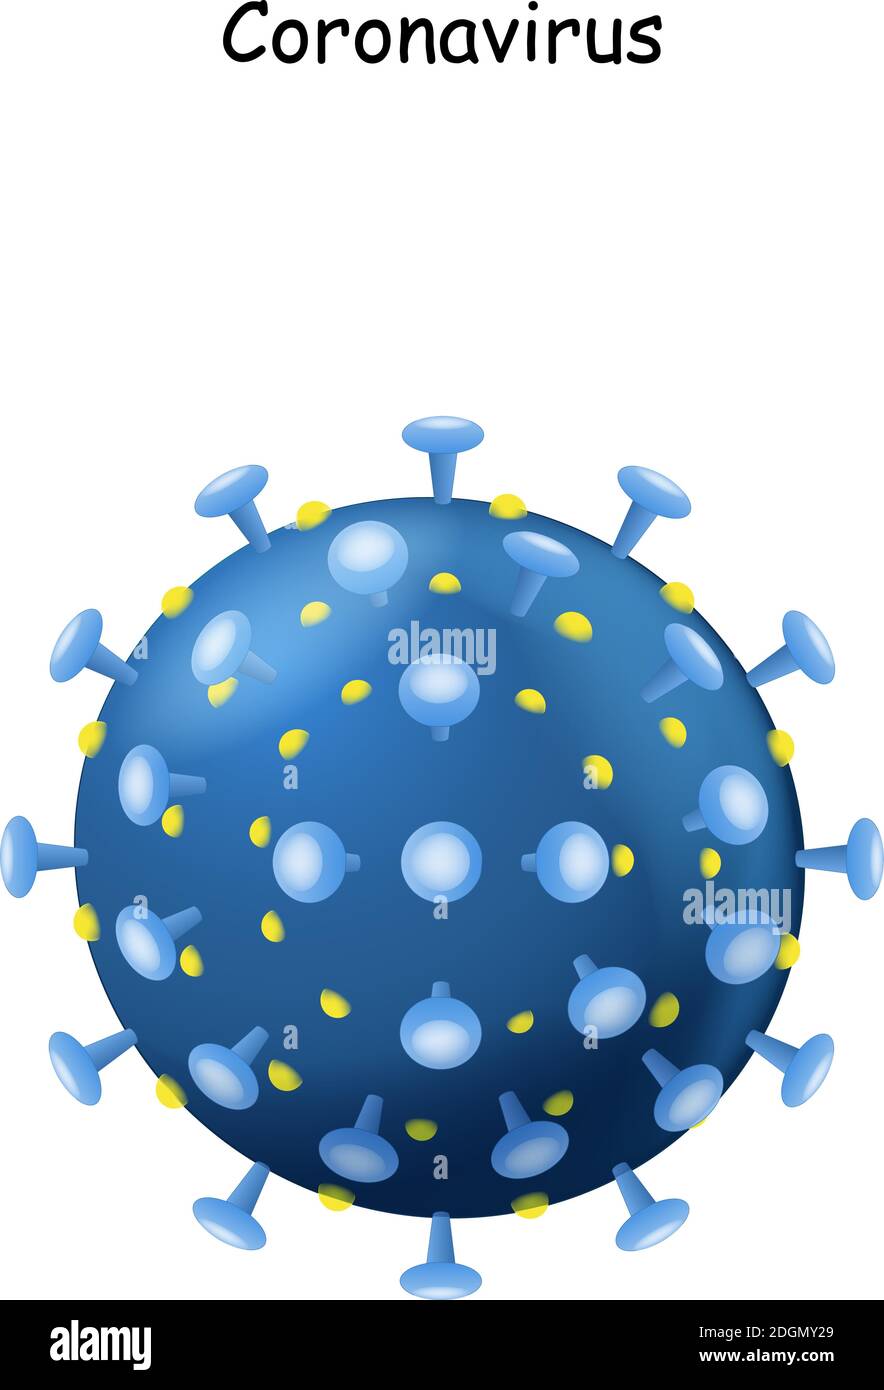 Corona Virus. Virione di Coronavirus su sfondo bianco. 2019-nCoV. Il virus che ha causato l'epidemia di polmonite in Cina. Illustrazione vettoriale Illustrazione Vettoriale